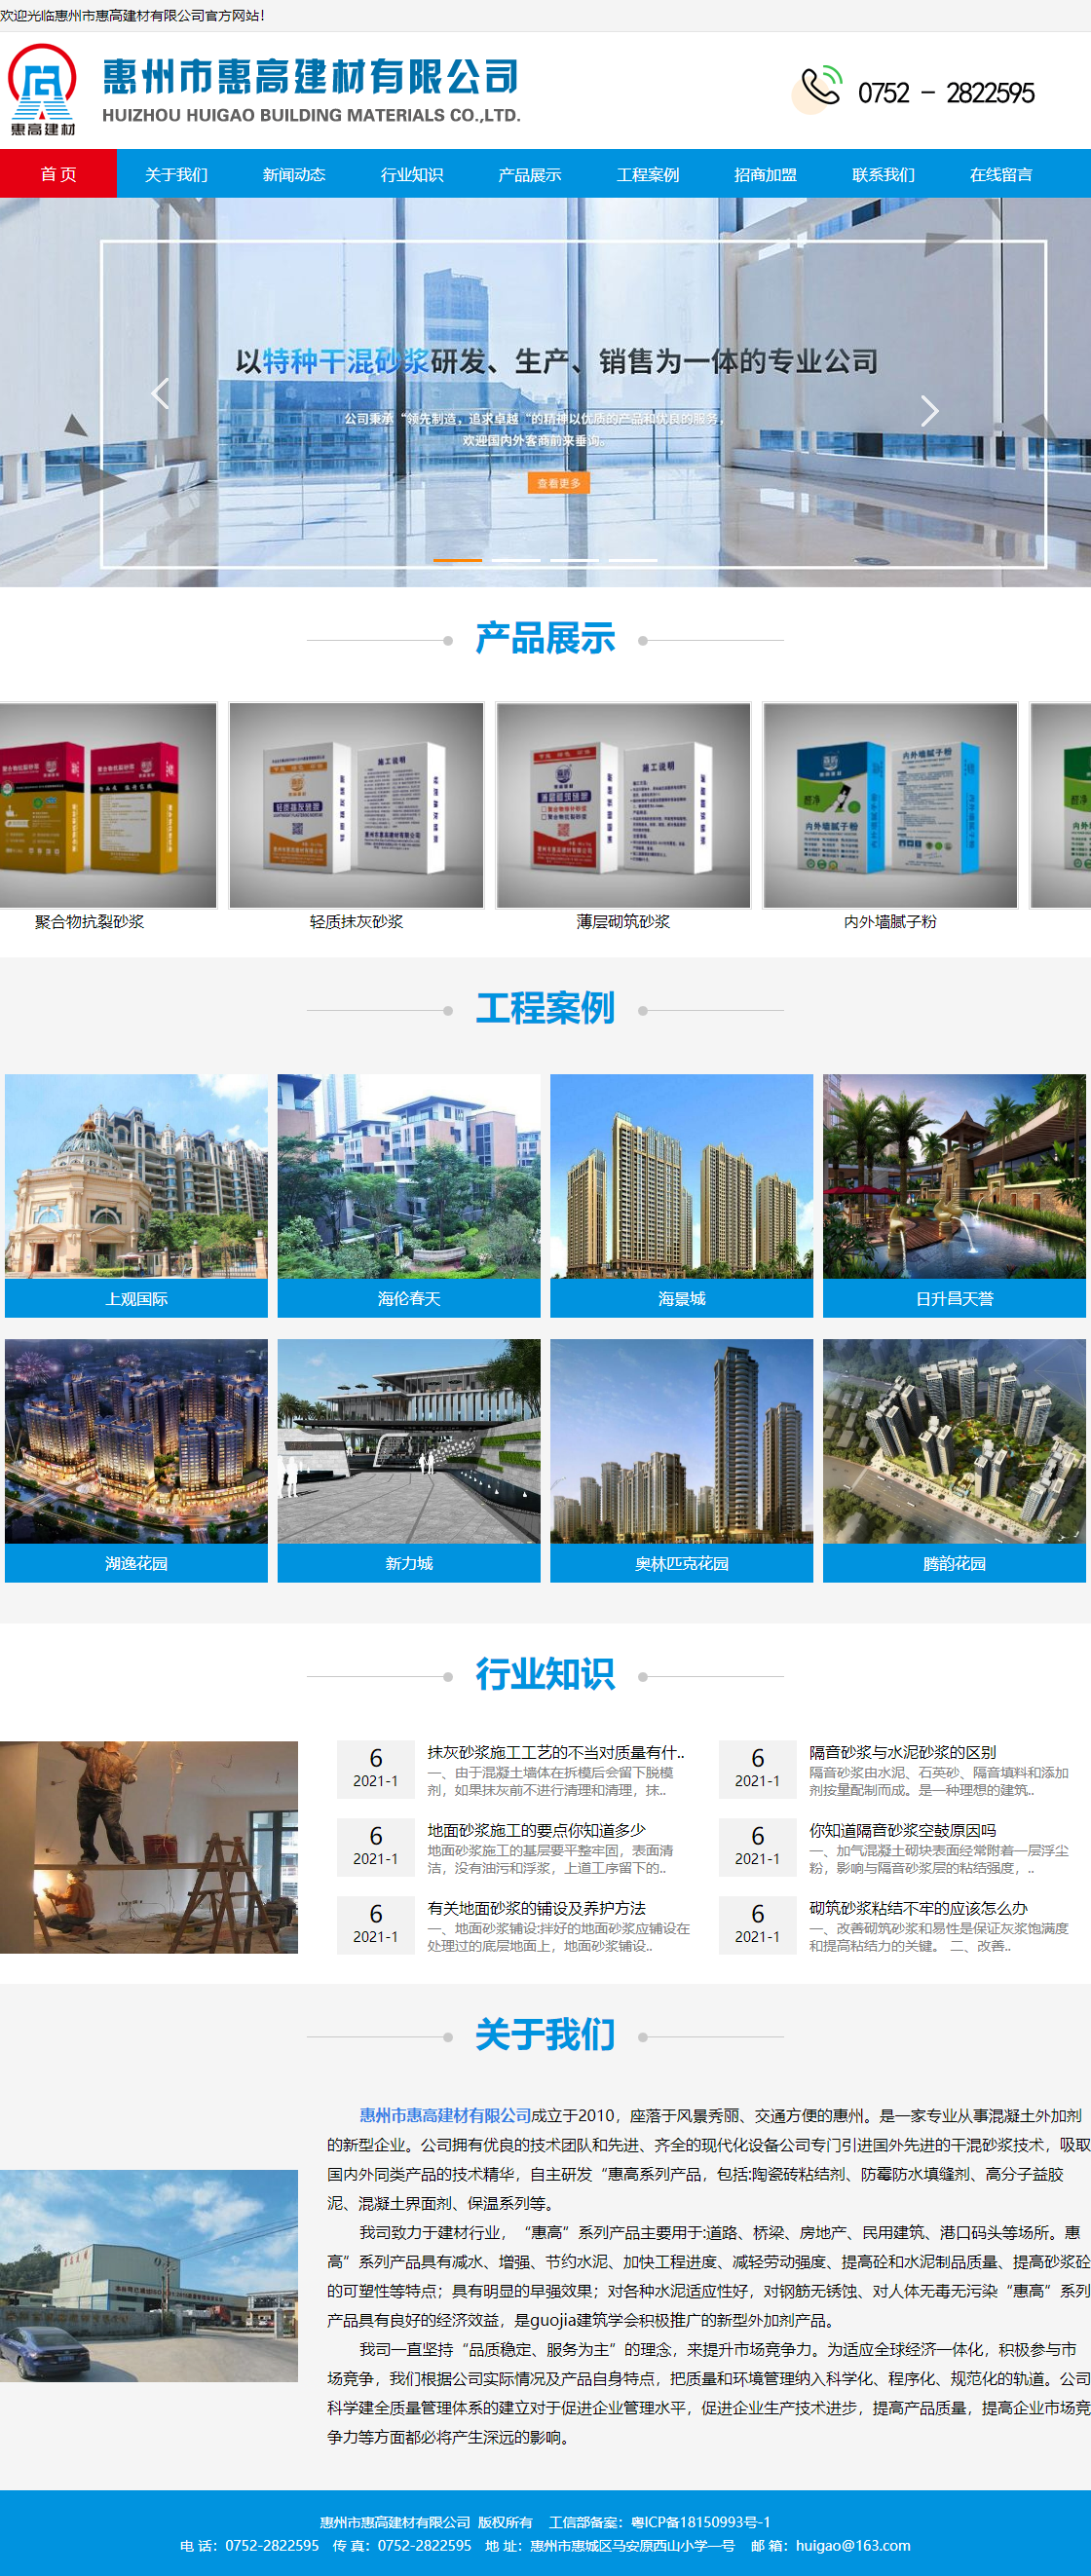 惠州市惠高建材有限公司网站案例